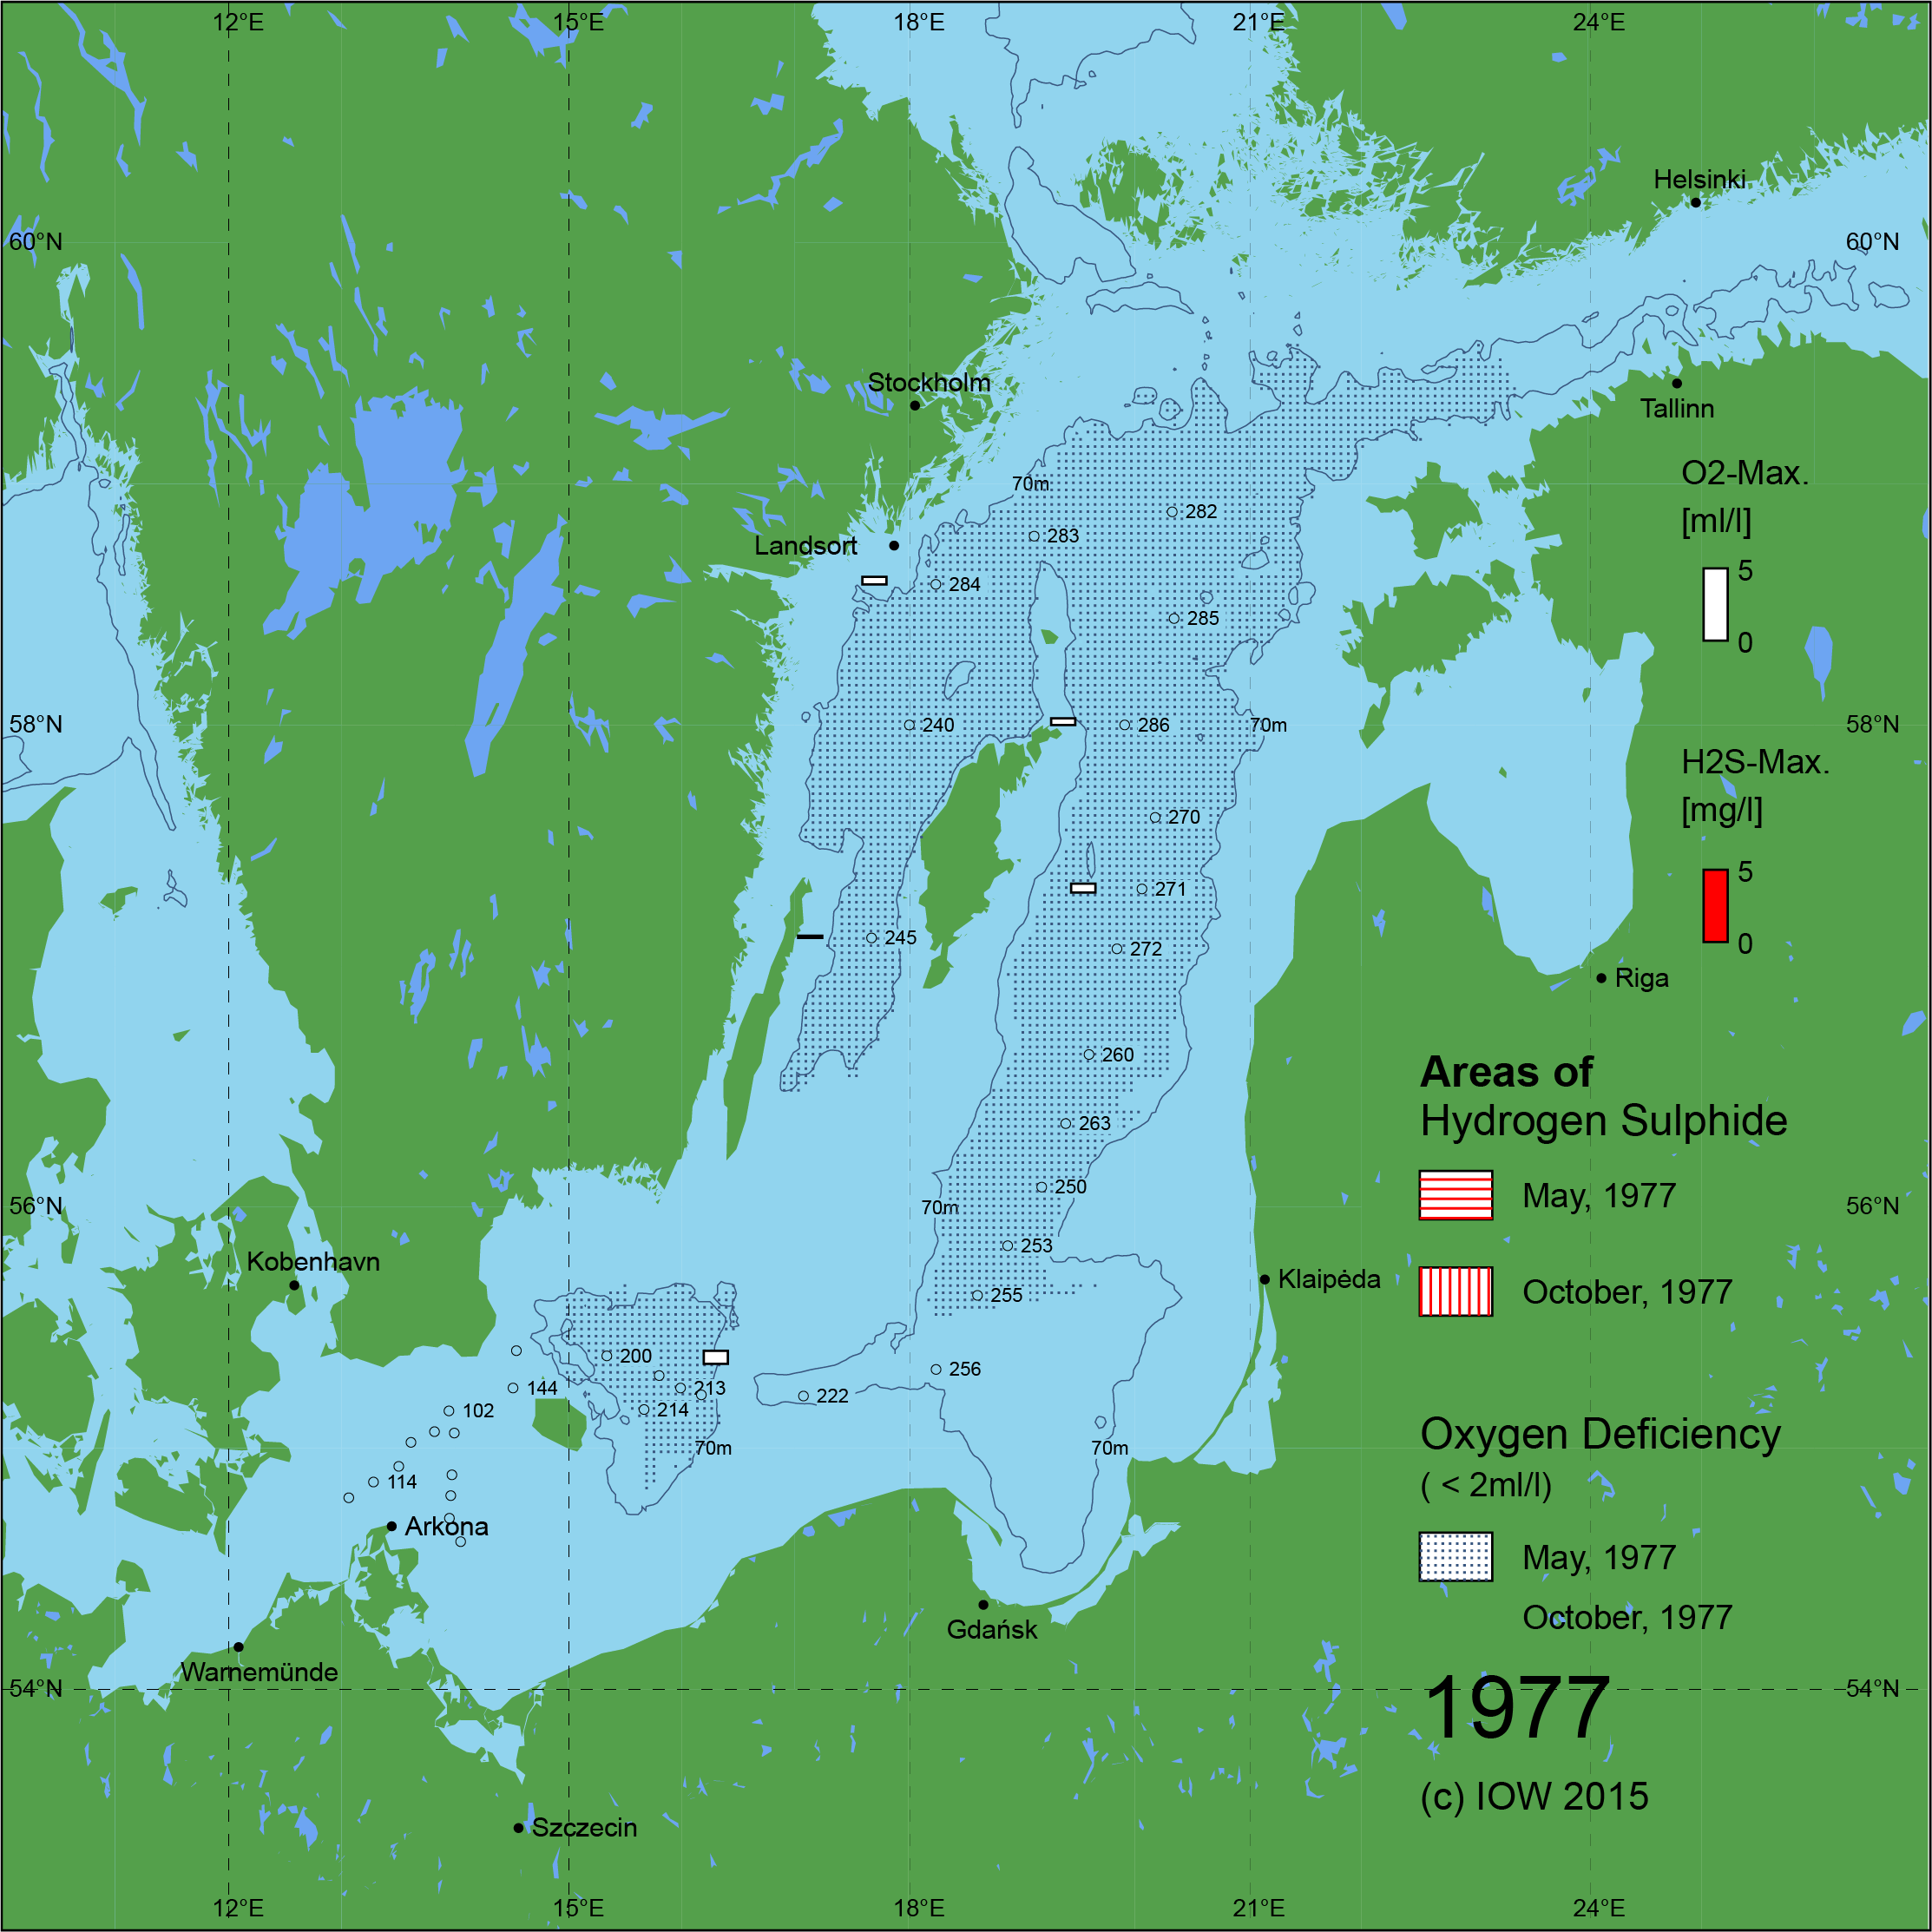 Sauerstoffarme und sauerstofffreie Gebiete in der Ostsee - 1977